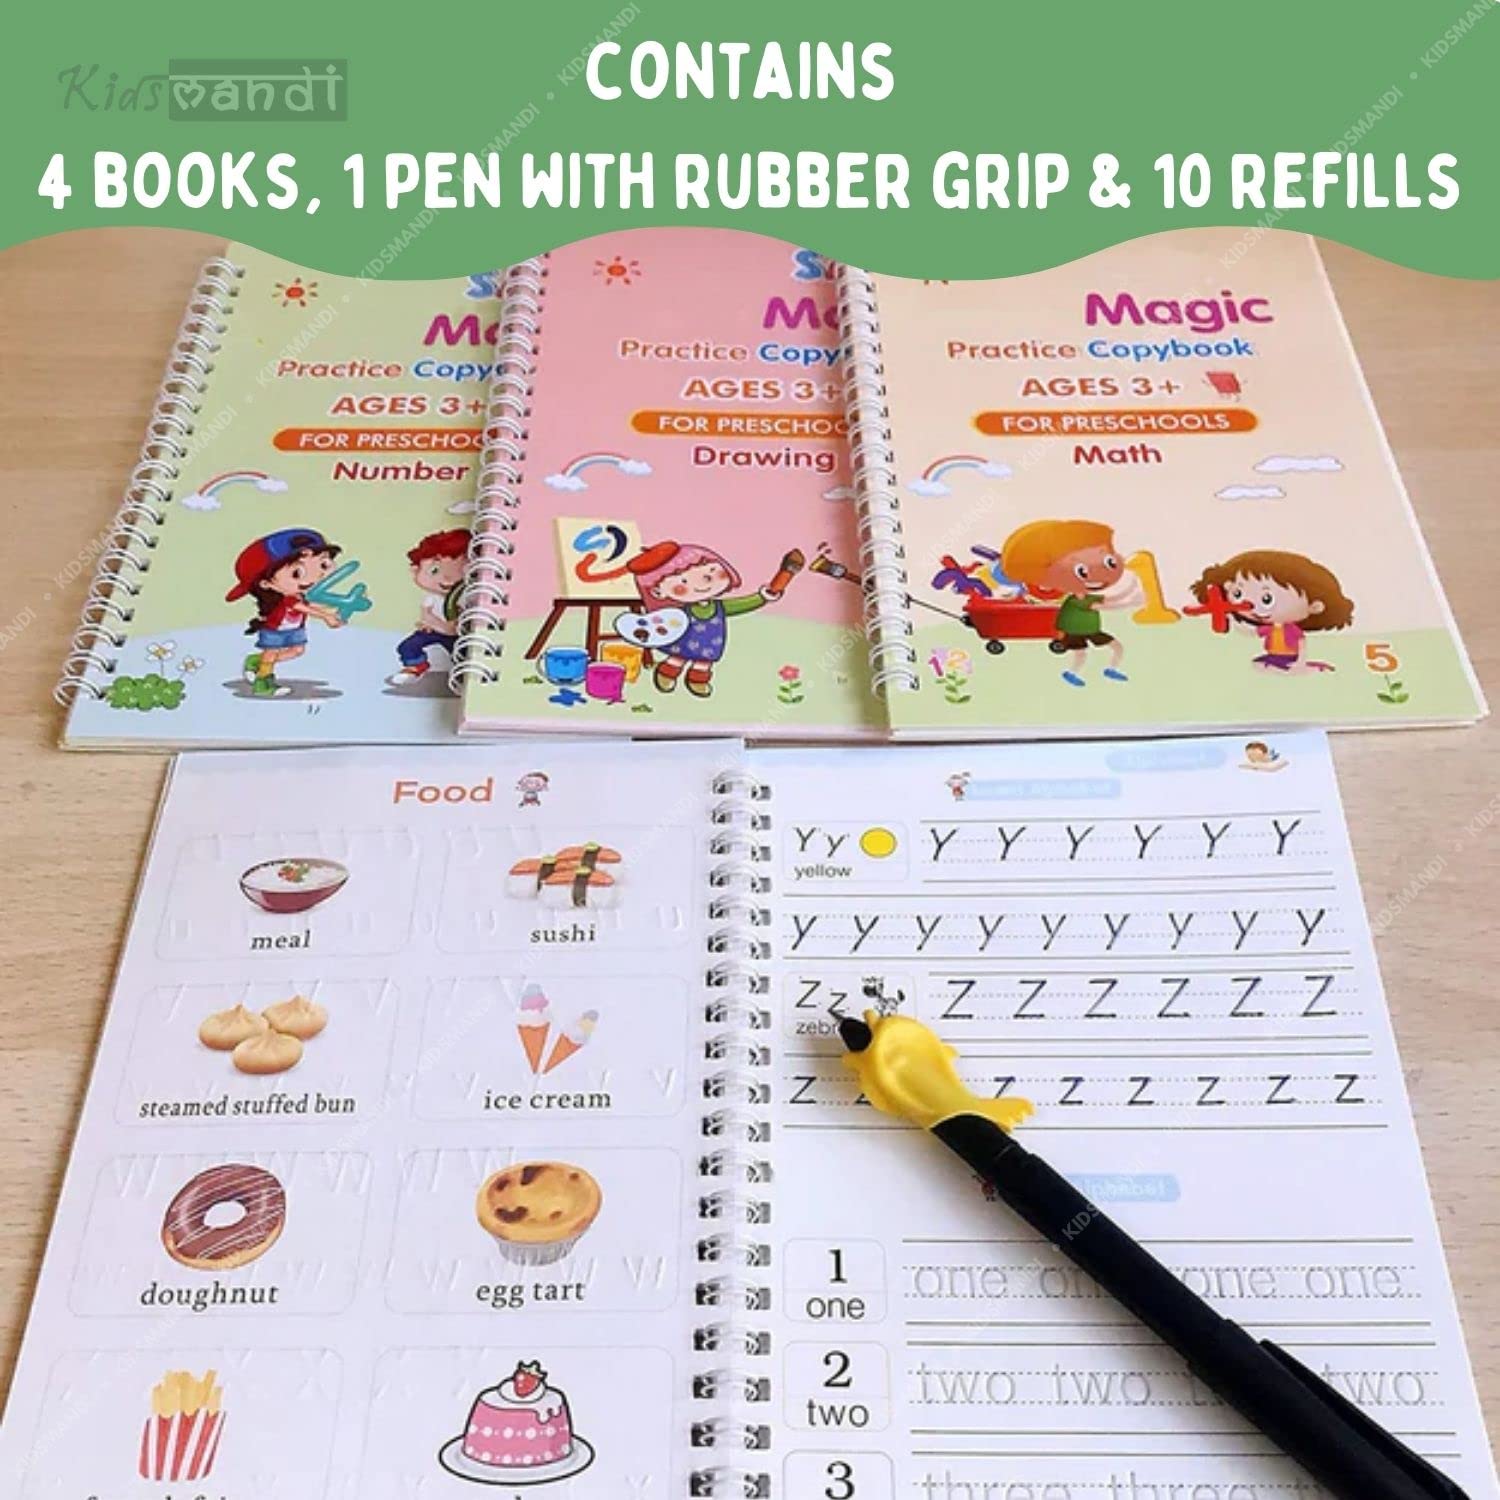 Kids Mandi 4-pcs Magic Practice Copybook Set Reusable Writing Drawing